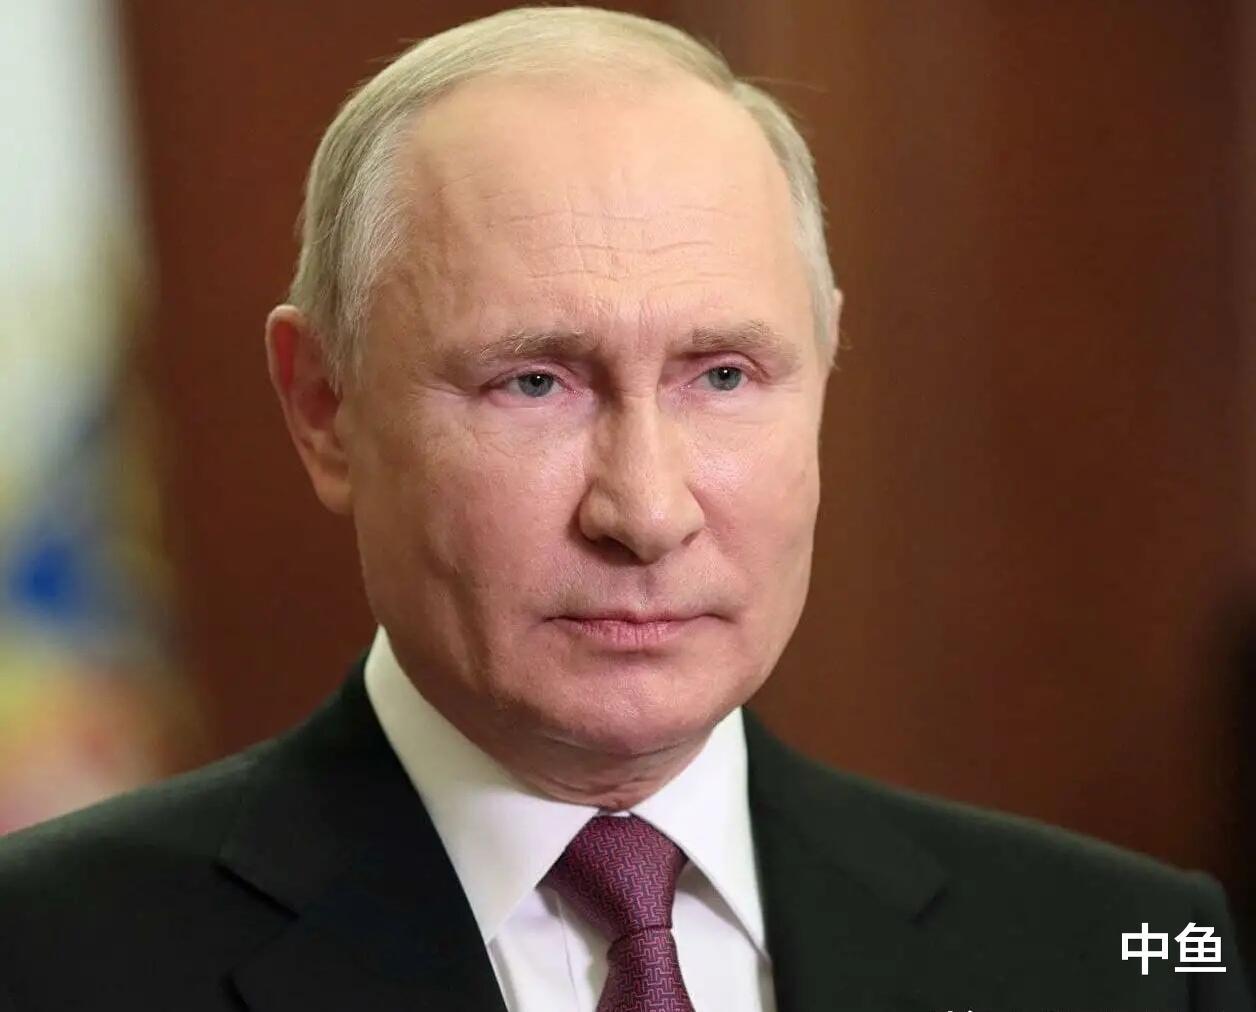 霸气！俄罗斯总统普京为俄超联赛外援人员名额使用上一锤定音